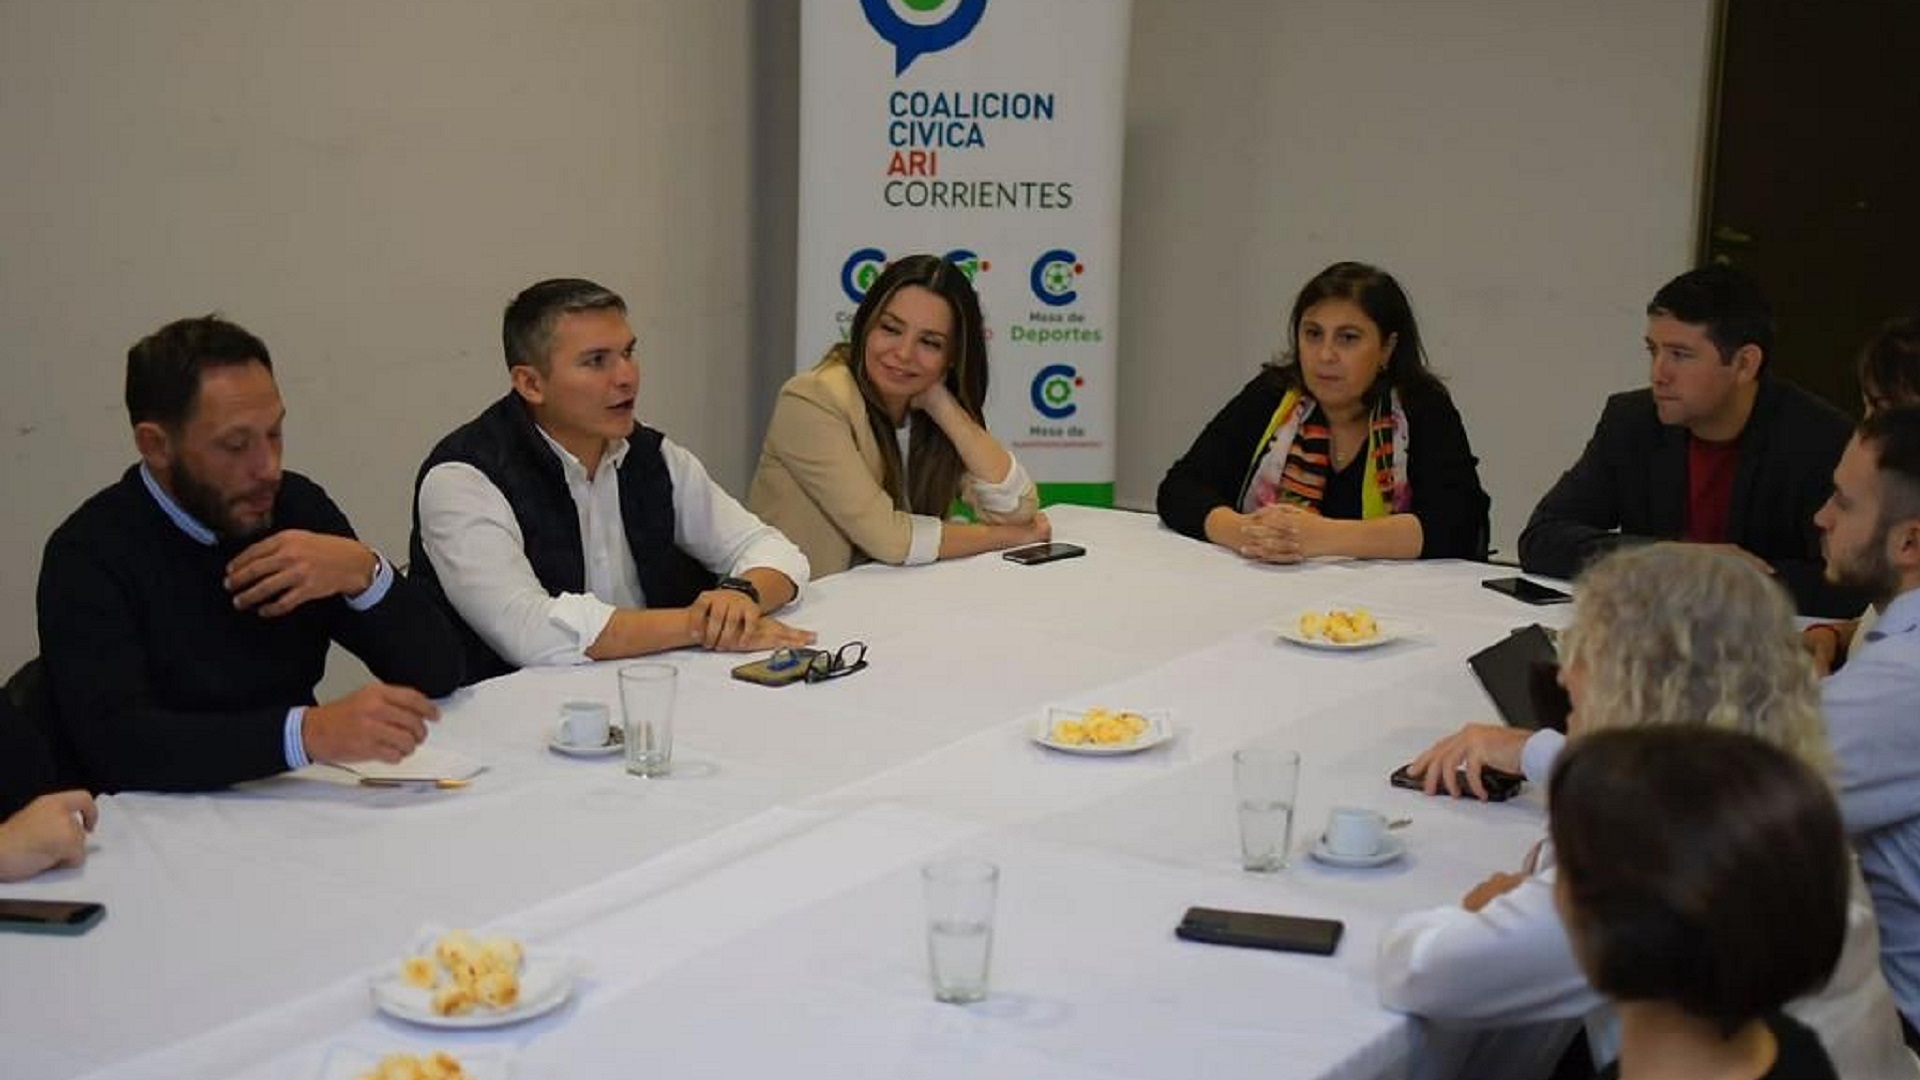 Dirigentes de la Coalición Cívica se reunieron en Corrientes y pidieron “bajar la intensidad de las diferencias” en JxC